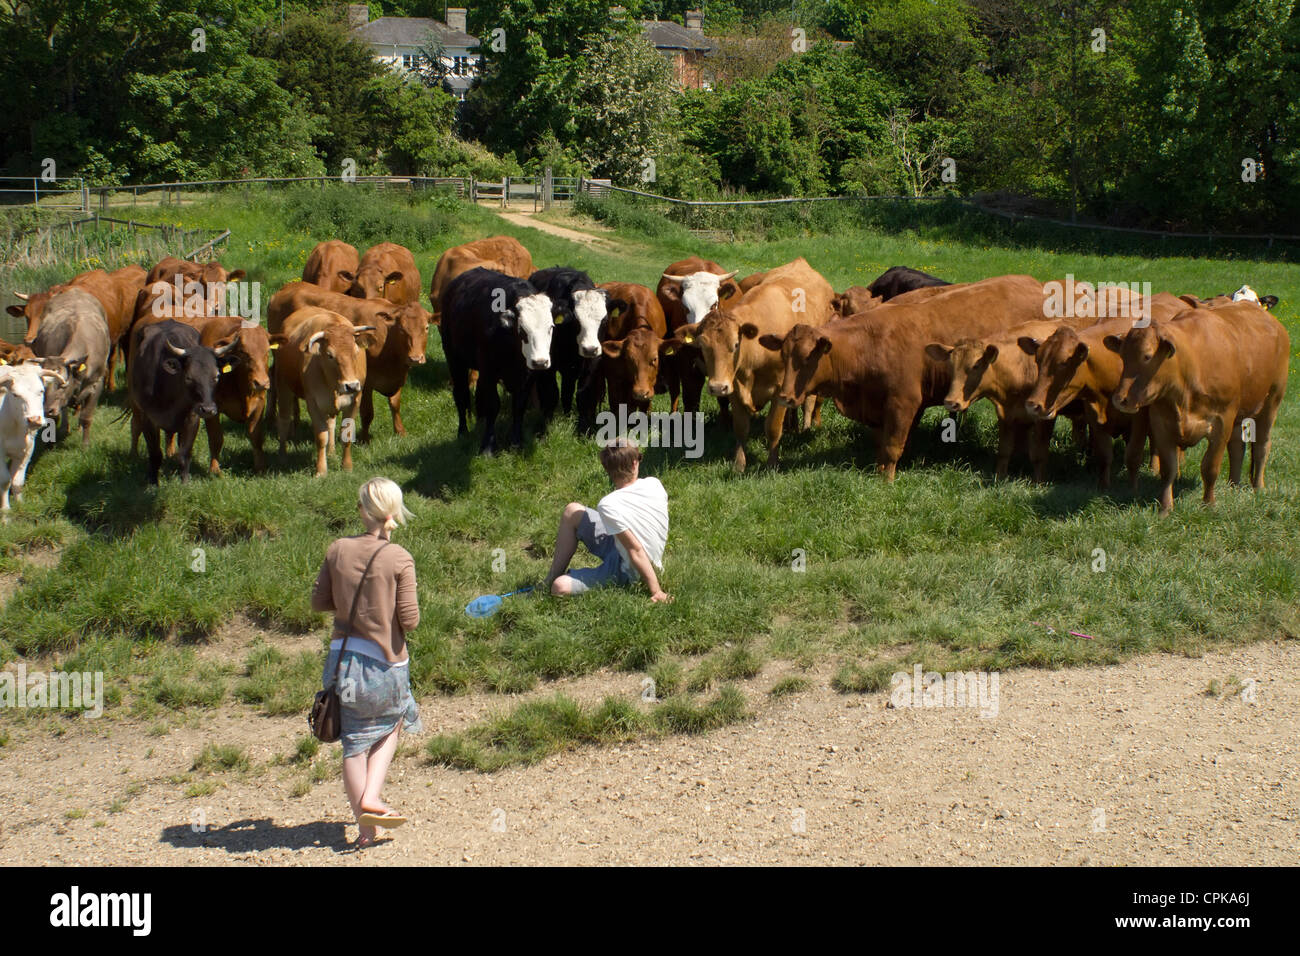 Dos personas en un campo que está siendo enfrentado por un rebaño de vacas. Foto de stock